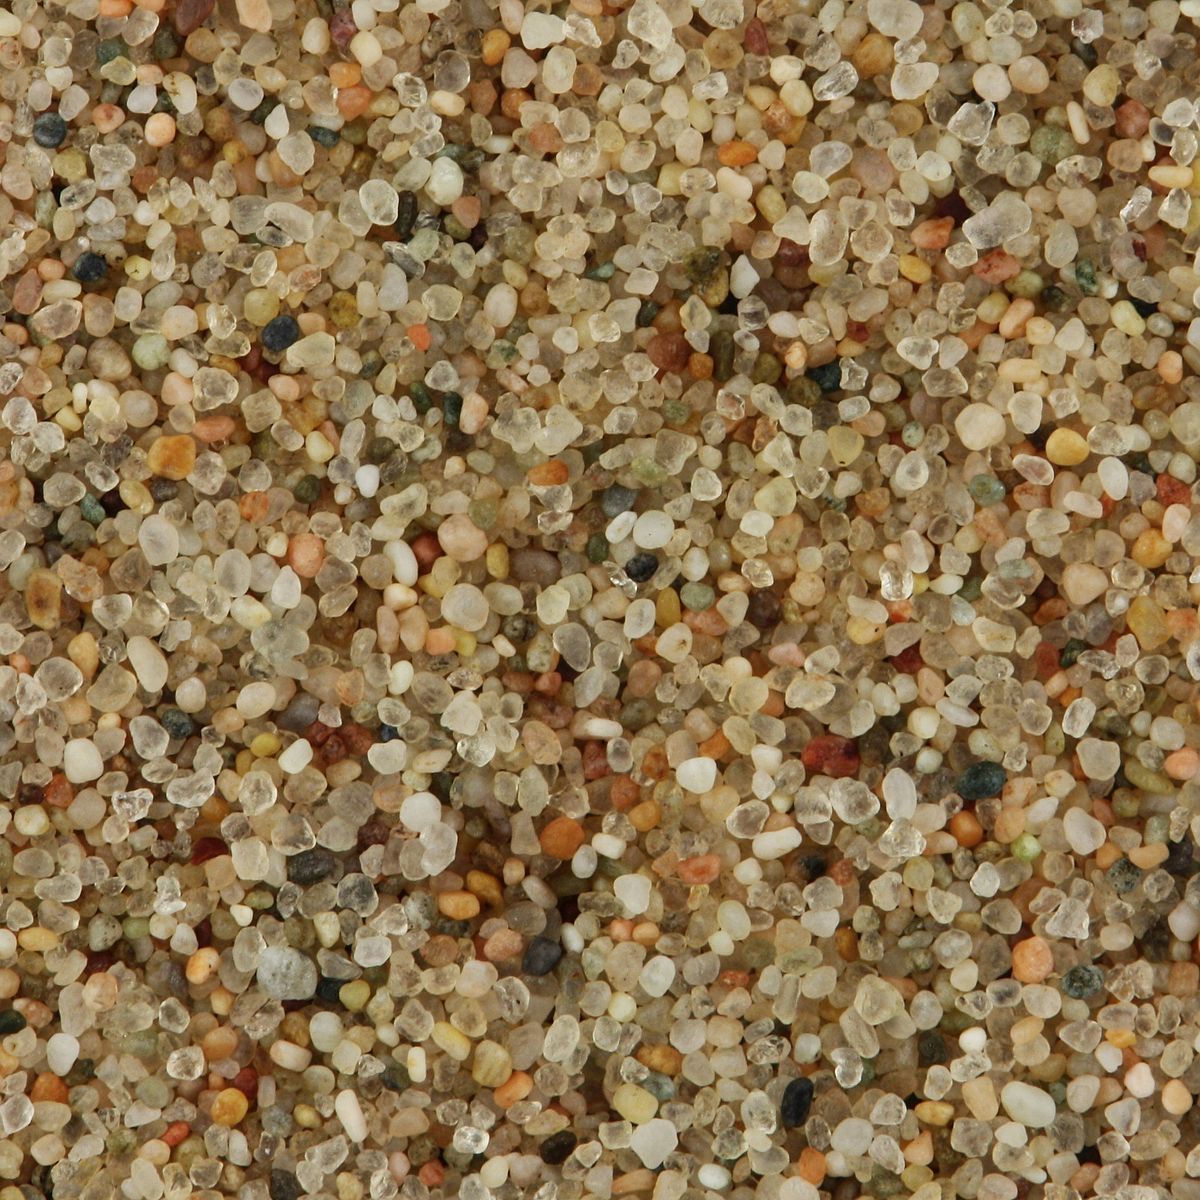 Sand from Gobi Desert by Siim Sepp, Wikimedia Commons